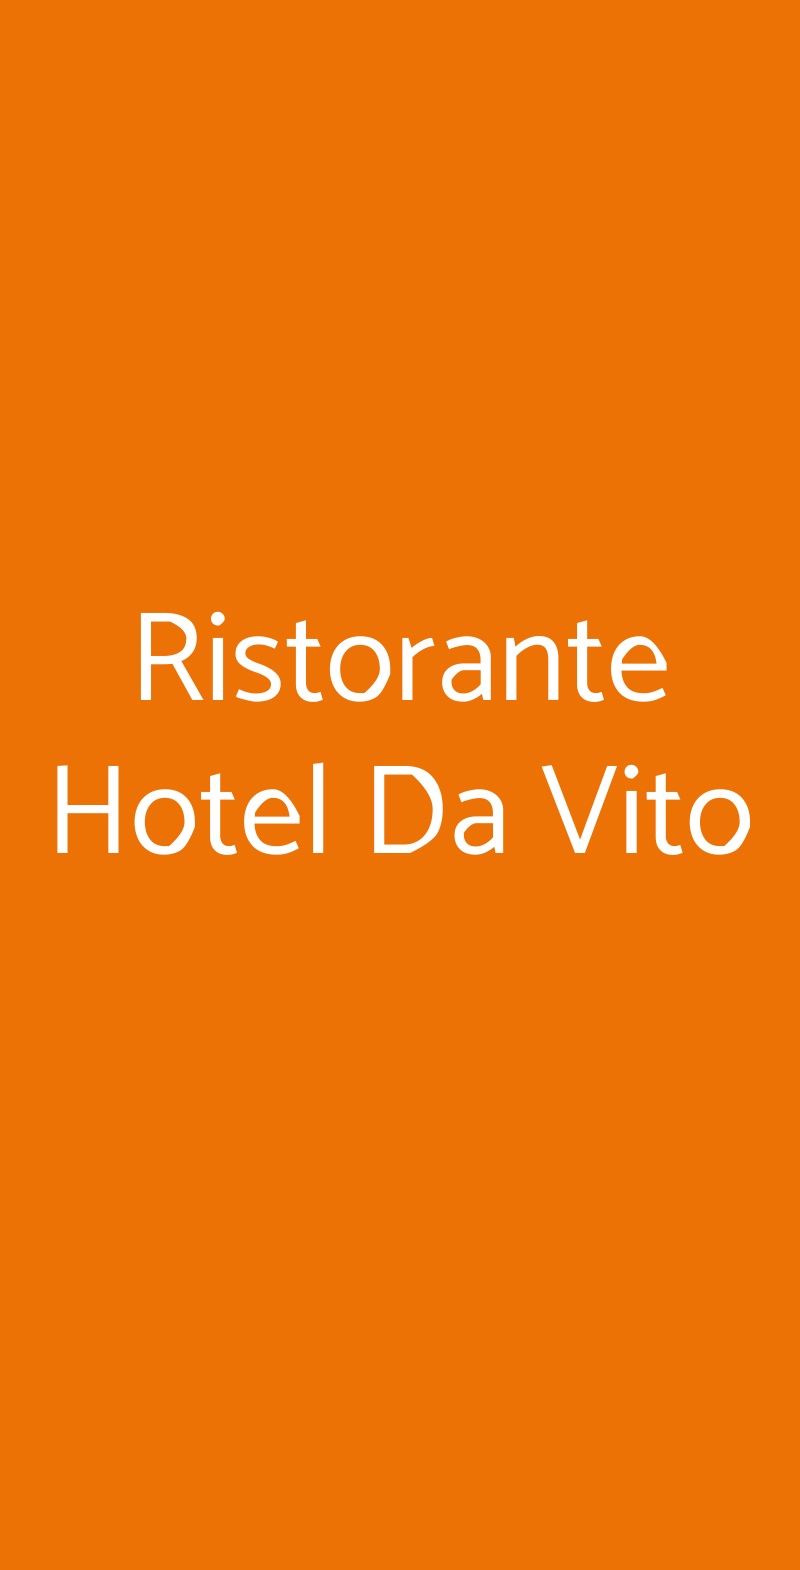 Ristorante Hotel Da Vito Campagna Lupia menù 1 pagina